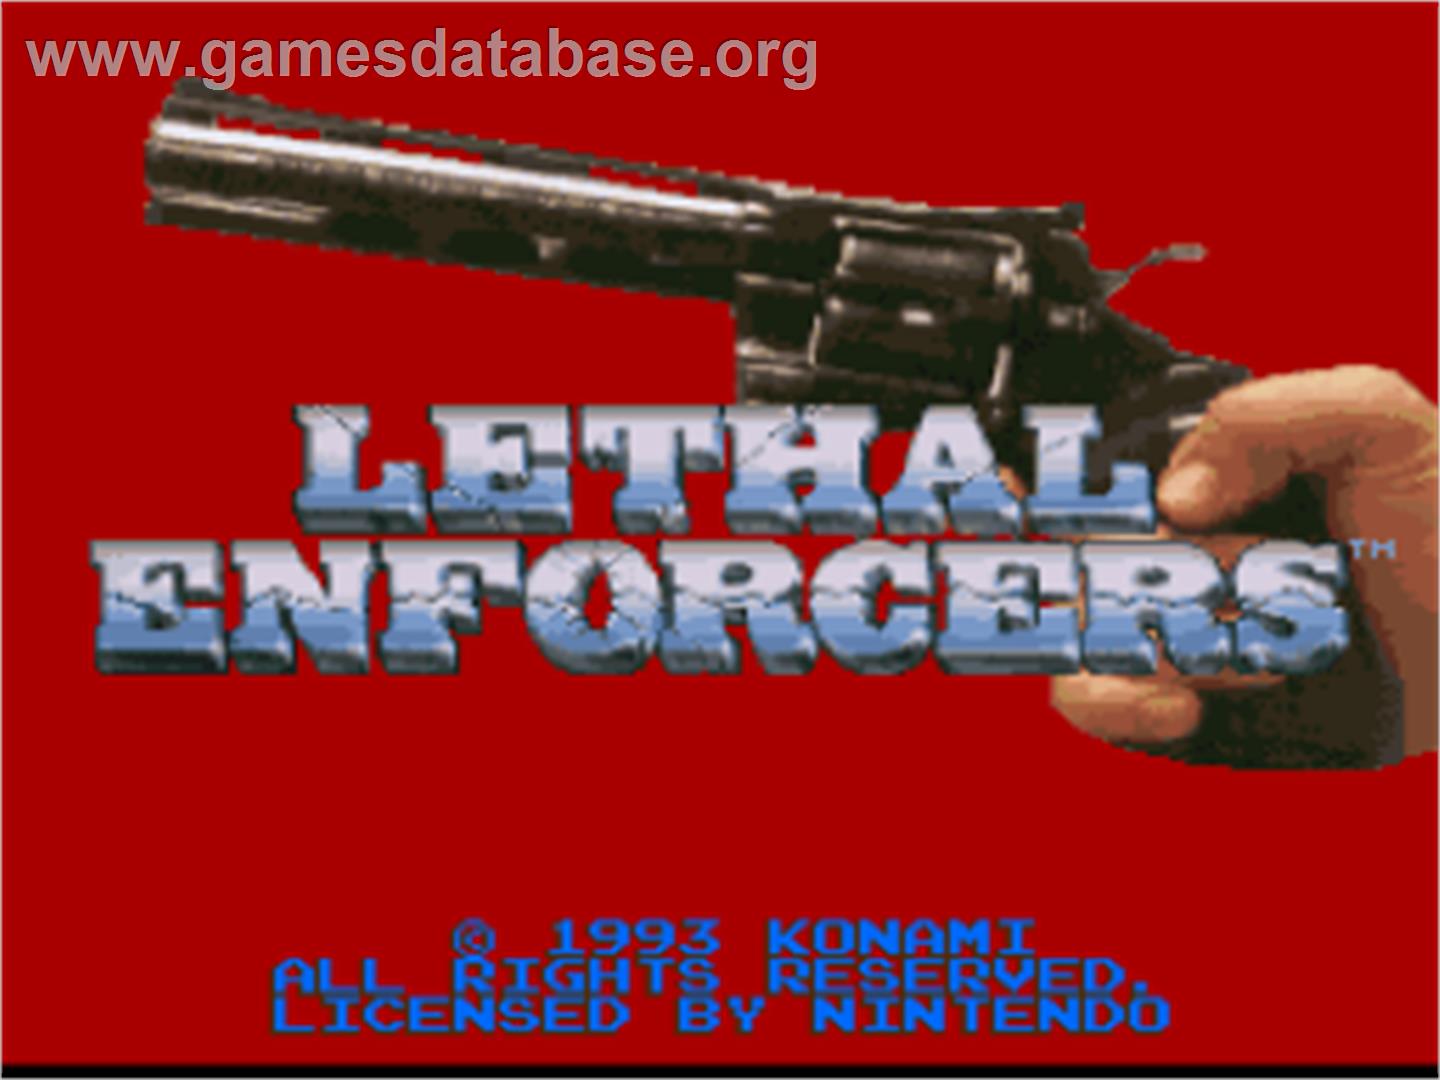 Lethal Enforcers - Nintendo SNES - Artwork - Title Screen